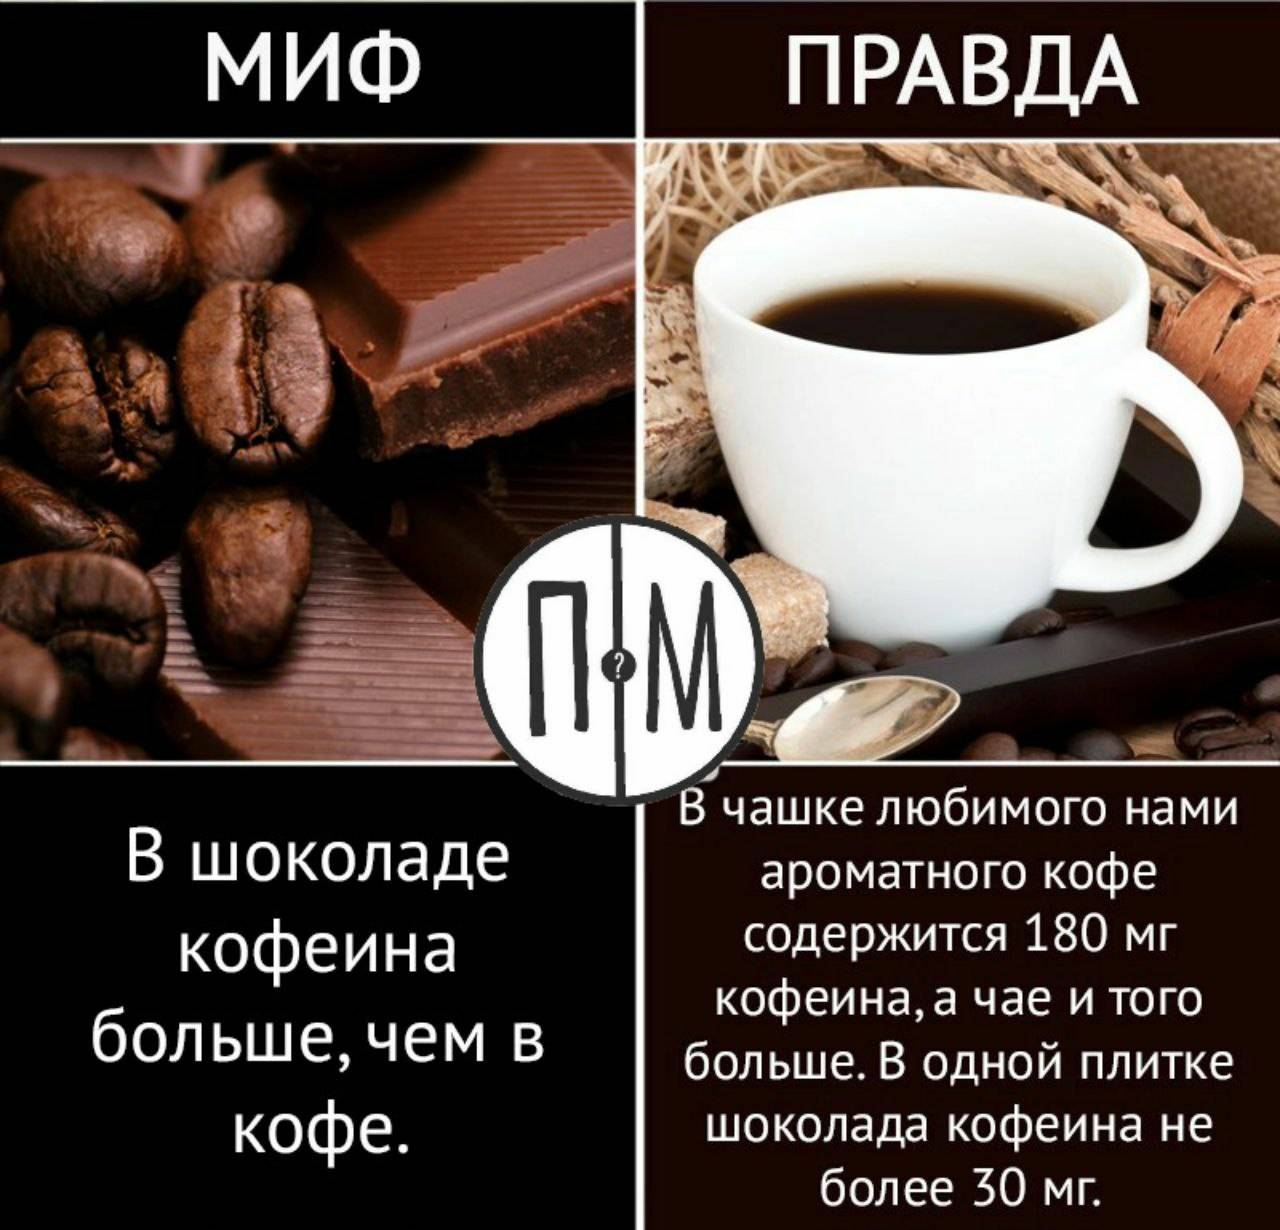 Есть ли кофеин в какао-порошке и шоколаде